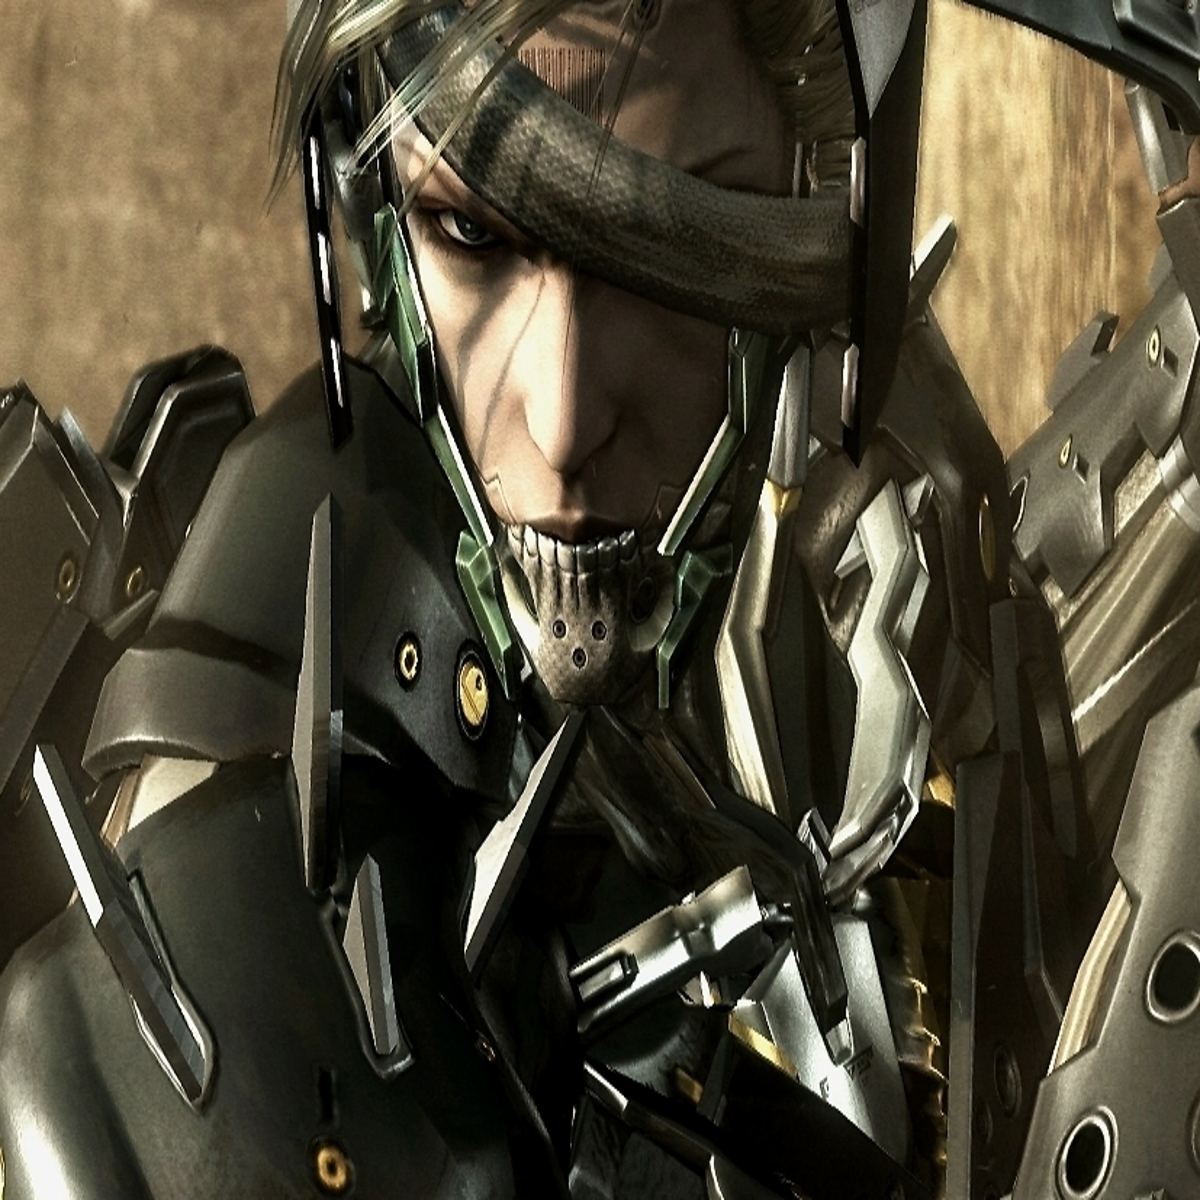 Jogo Metal Gear Rising Revengeance Xbox 360 Game Original Físico